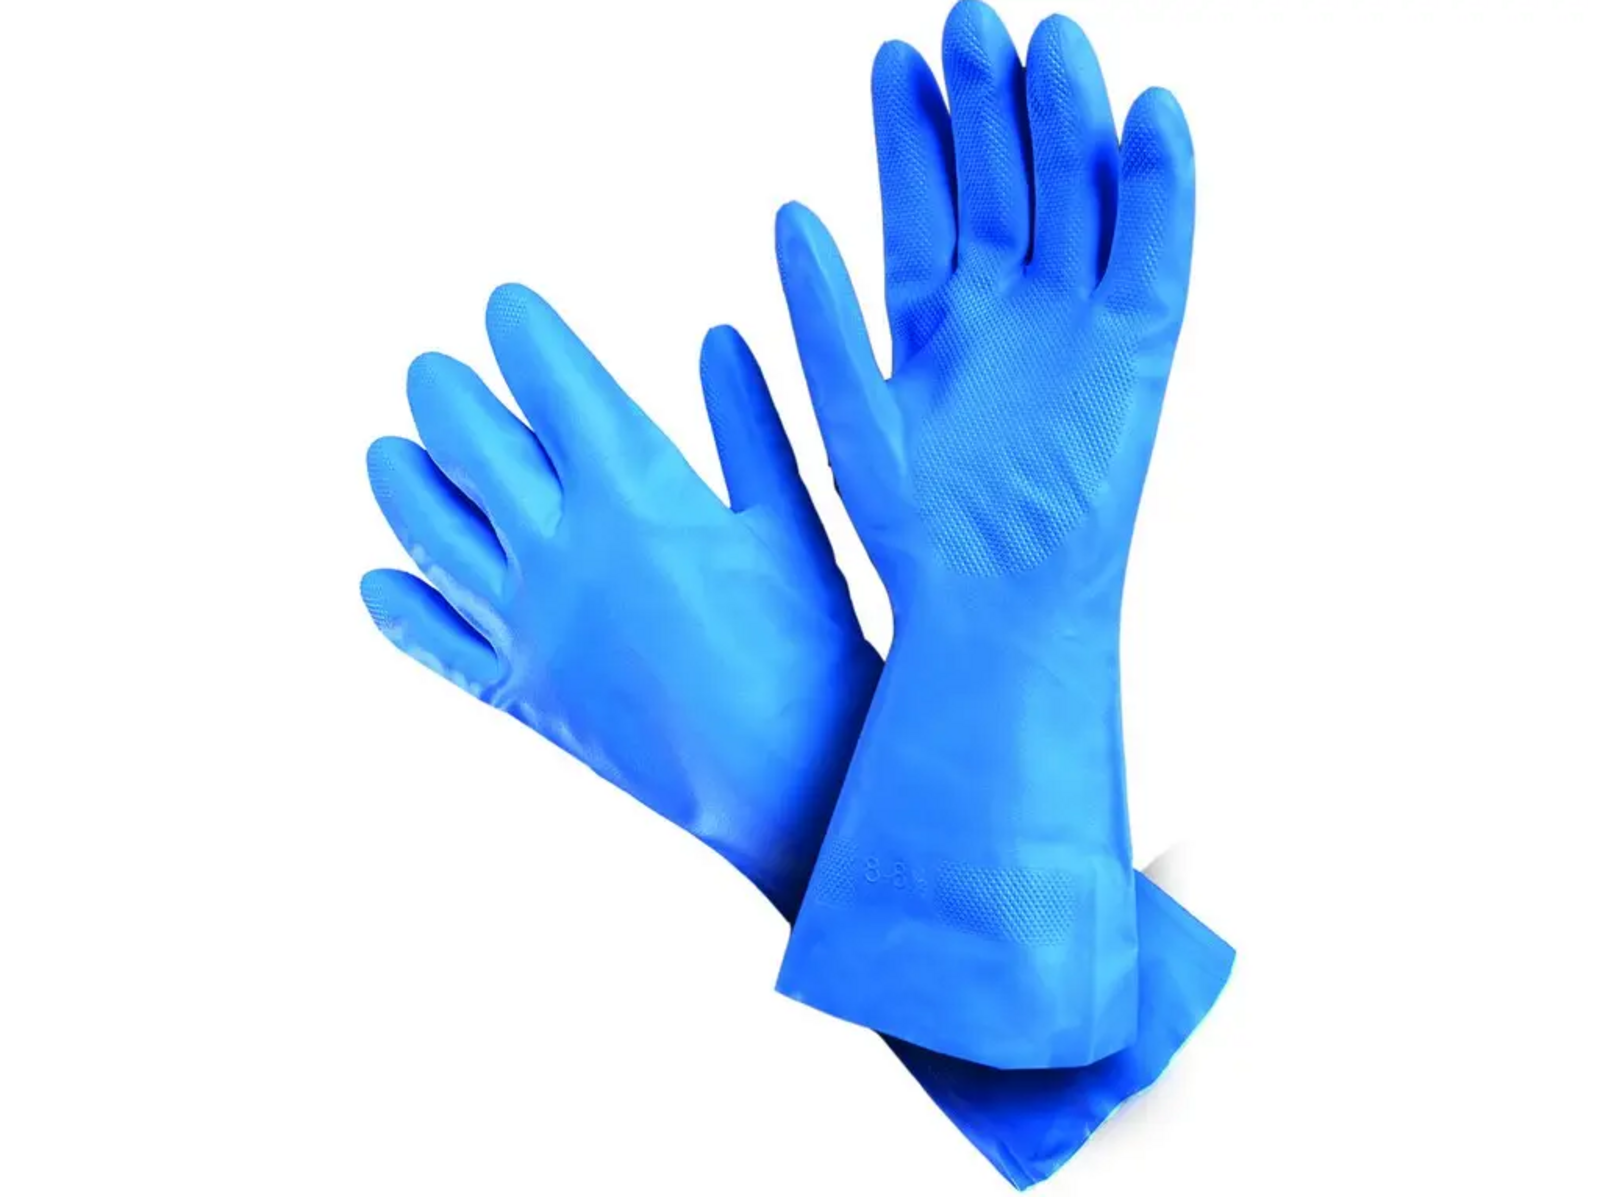 Kyselinovzdorné rukavice Mapa Ultranitril 495 - veľkosť: 8/M, farba: modrá